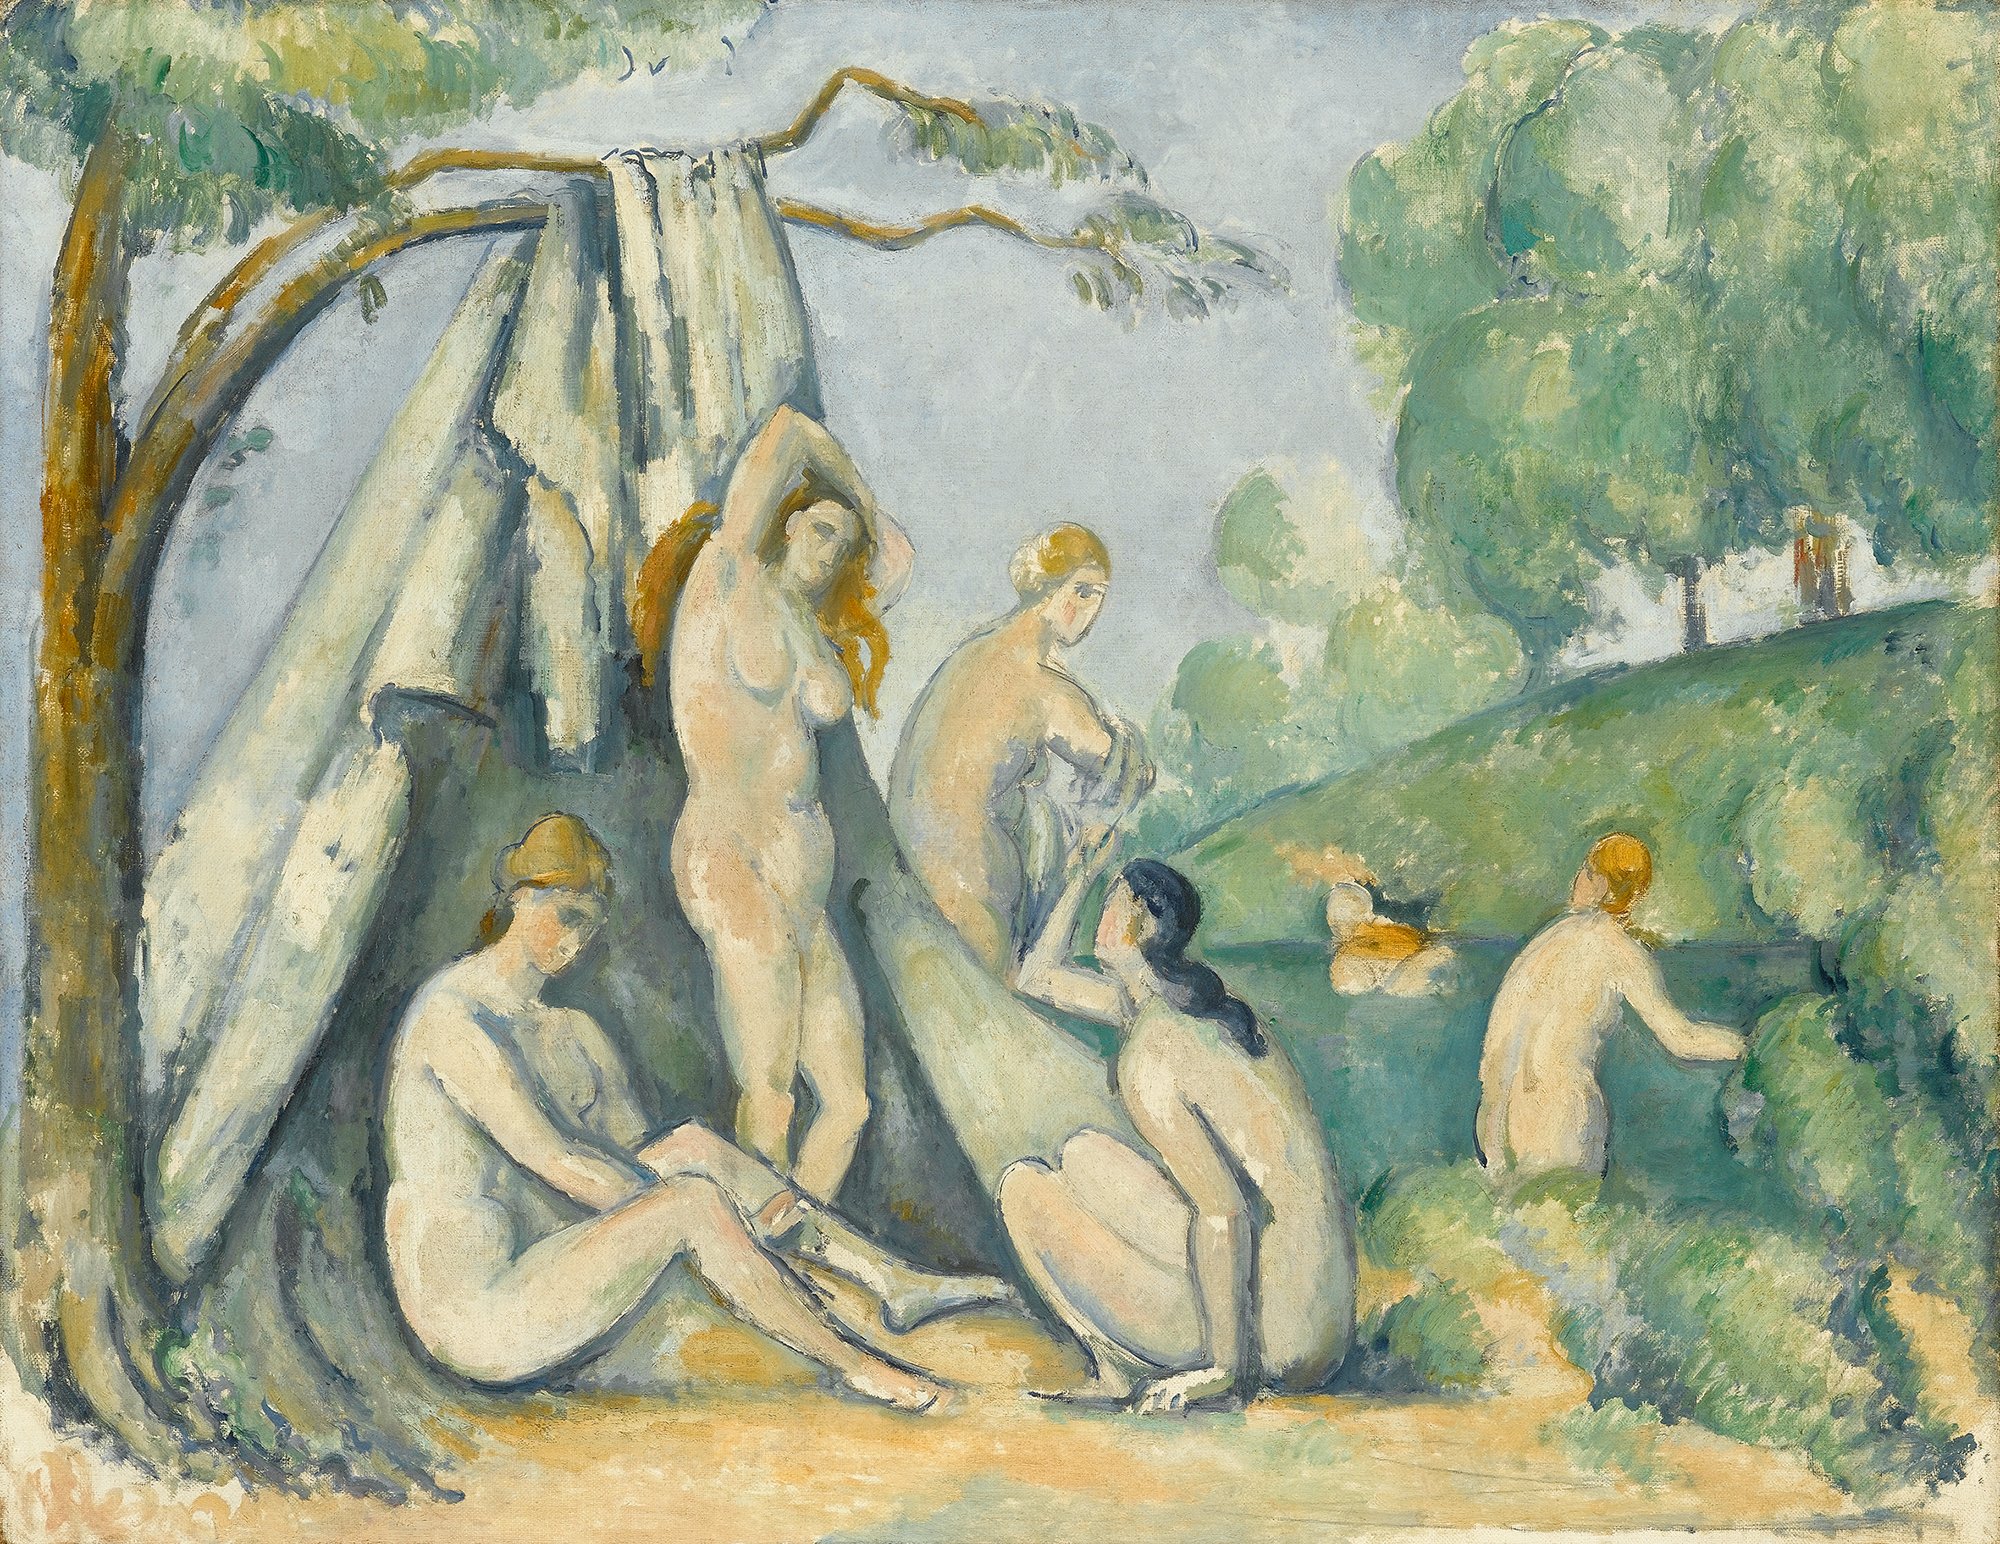 Abbildung des Werks "Badende vor einem Zelt" des Künstlers Paul Cézanne, das in der Ausstellung "Cézanne Metamorphosen" vom 28. Oktober 2017 bis 11. Februar 2018 in der Staatlichen Kunsthalle Karlsruhe zu sehen war.